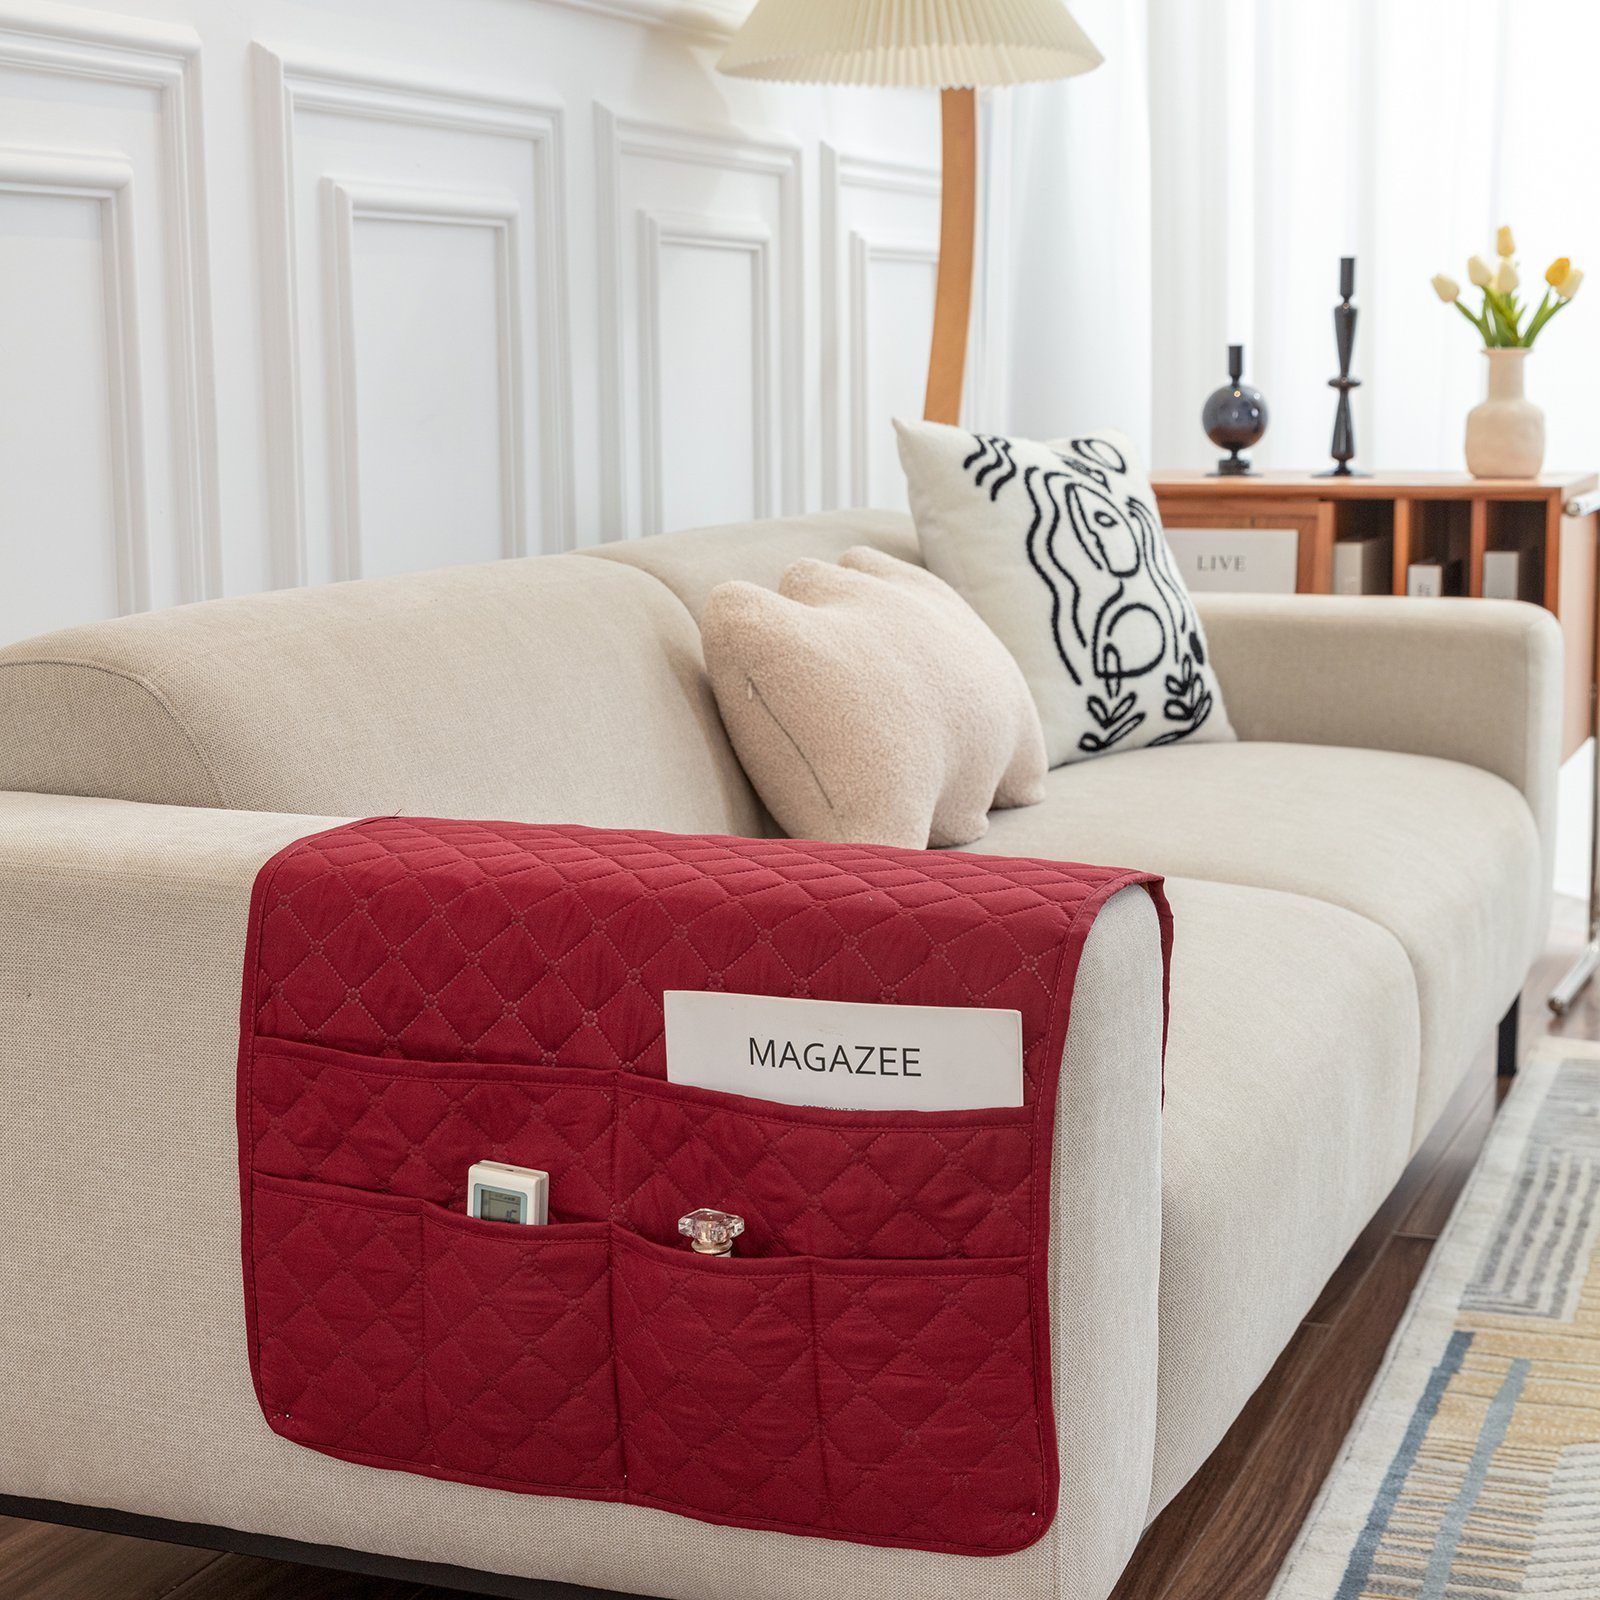 Sofahusse Armbezug, wasserabweisend, 50x90cm Sofa, für Seitentasche, mit Rosnek, Rot rutschfest